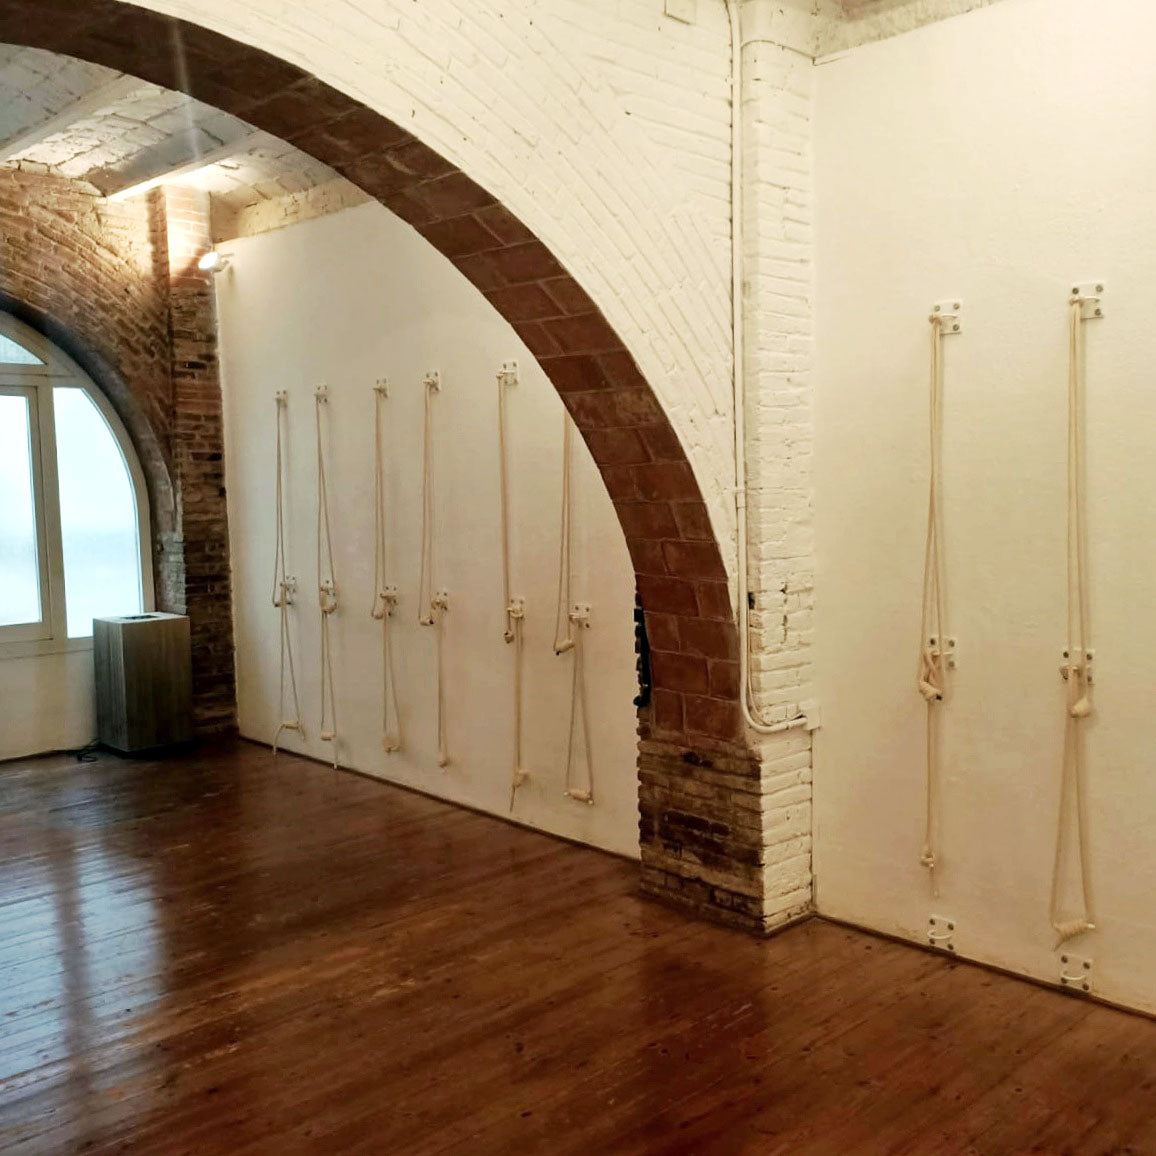 Juego completo de cuerdas de pared para yoga: 2 cuerdas de algodón, 2 ganchos y kit de instalación